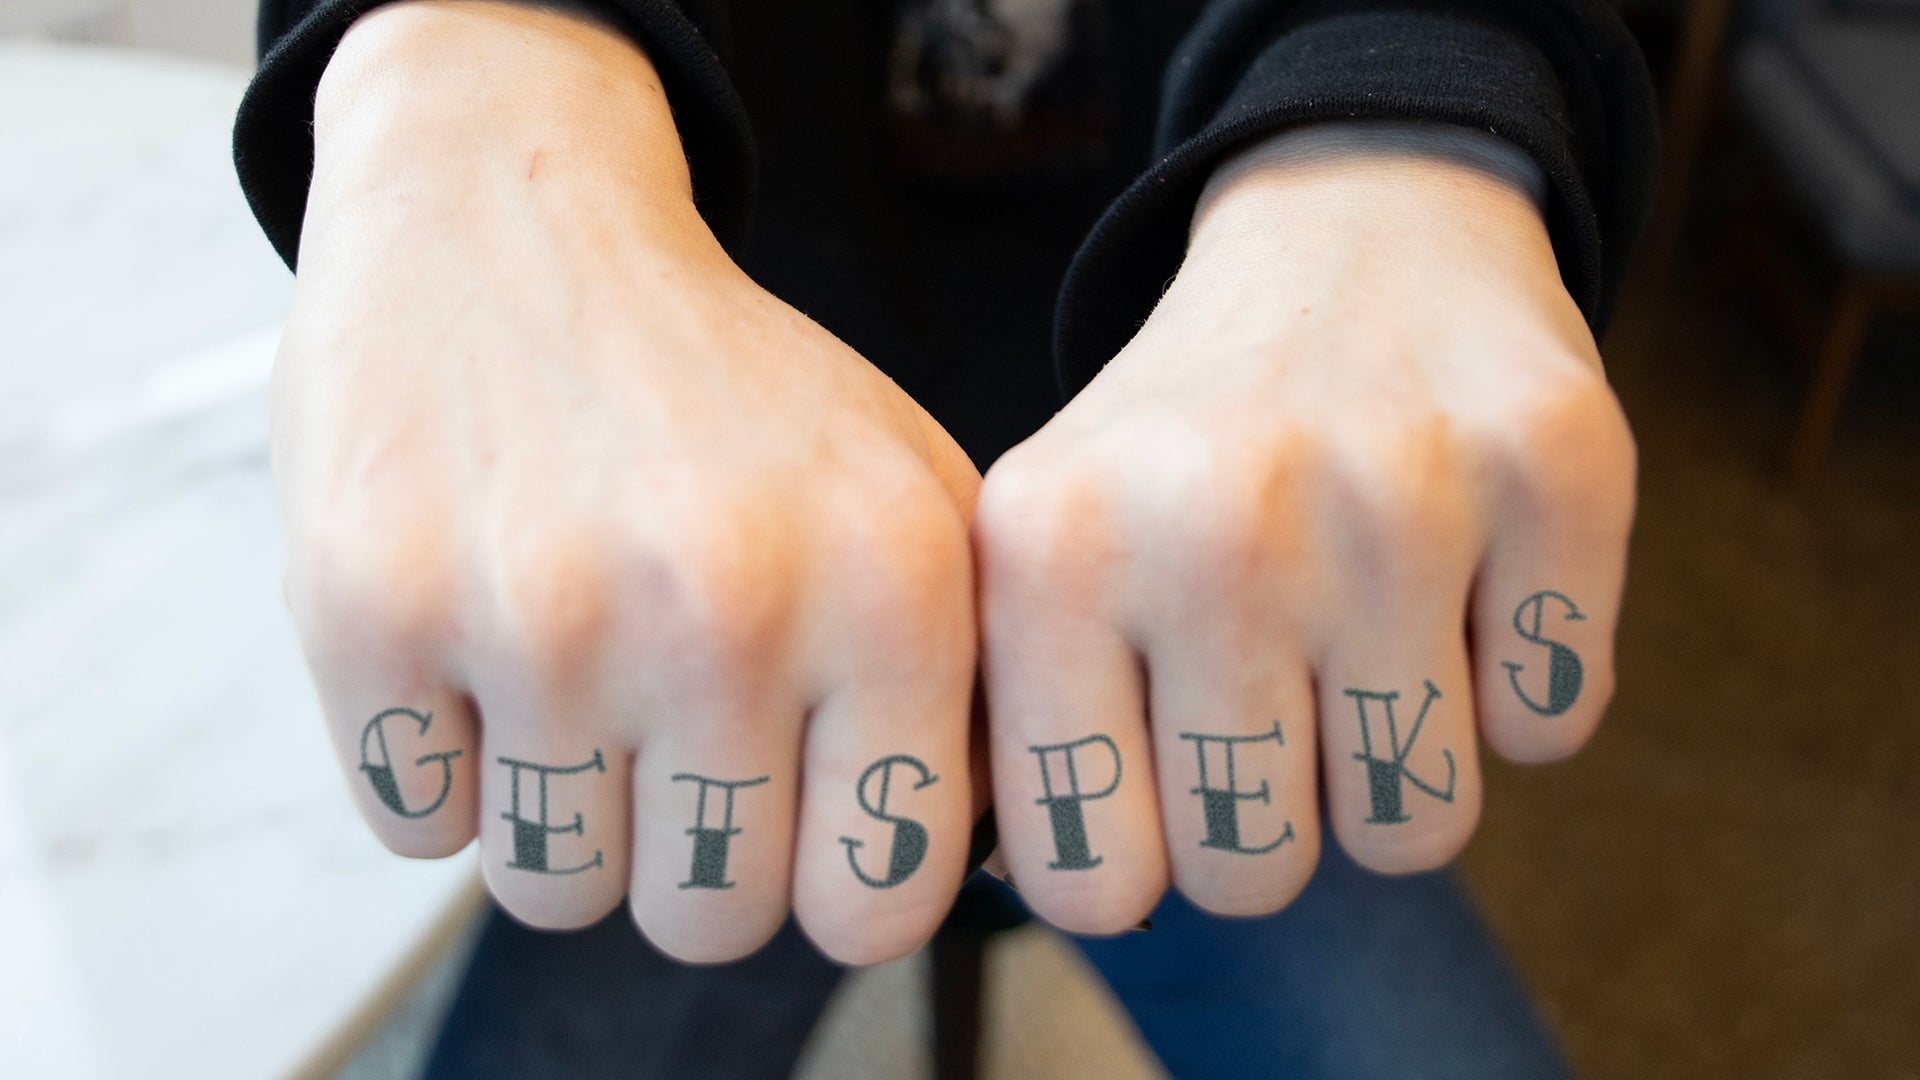 GETSPEKS Tattoo on hands